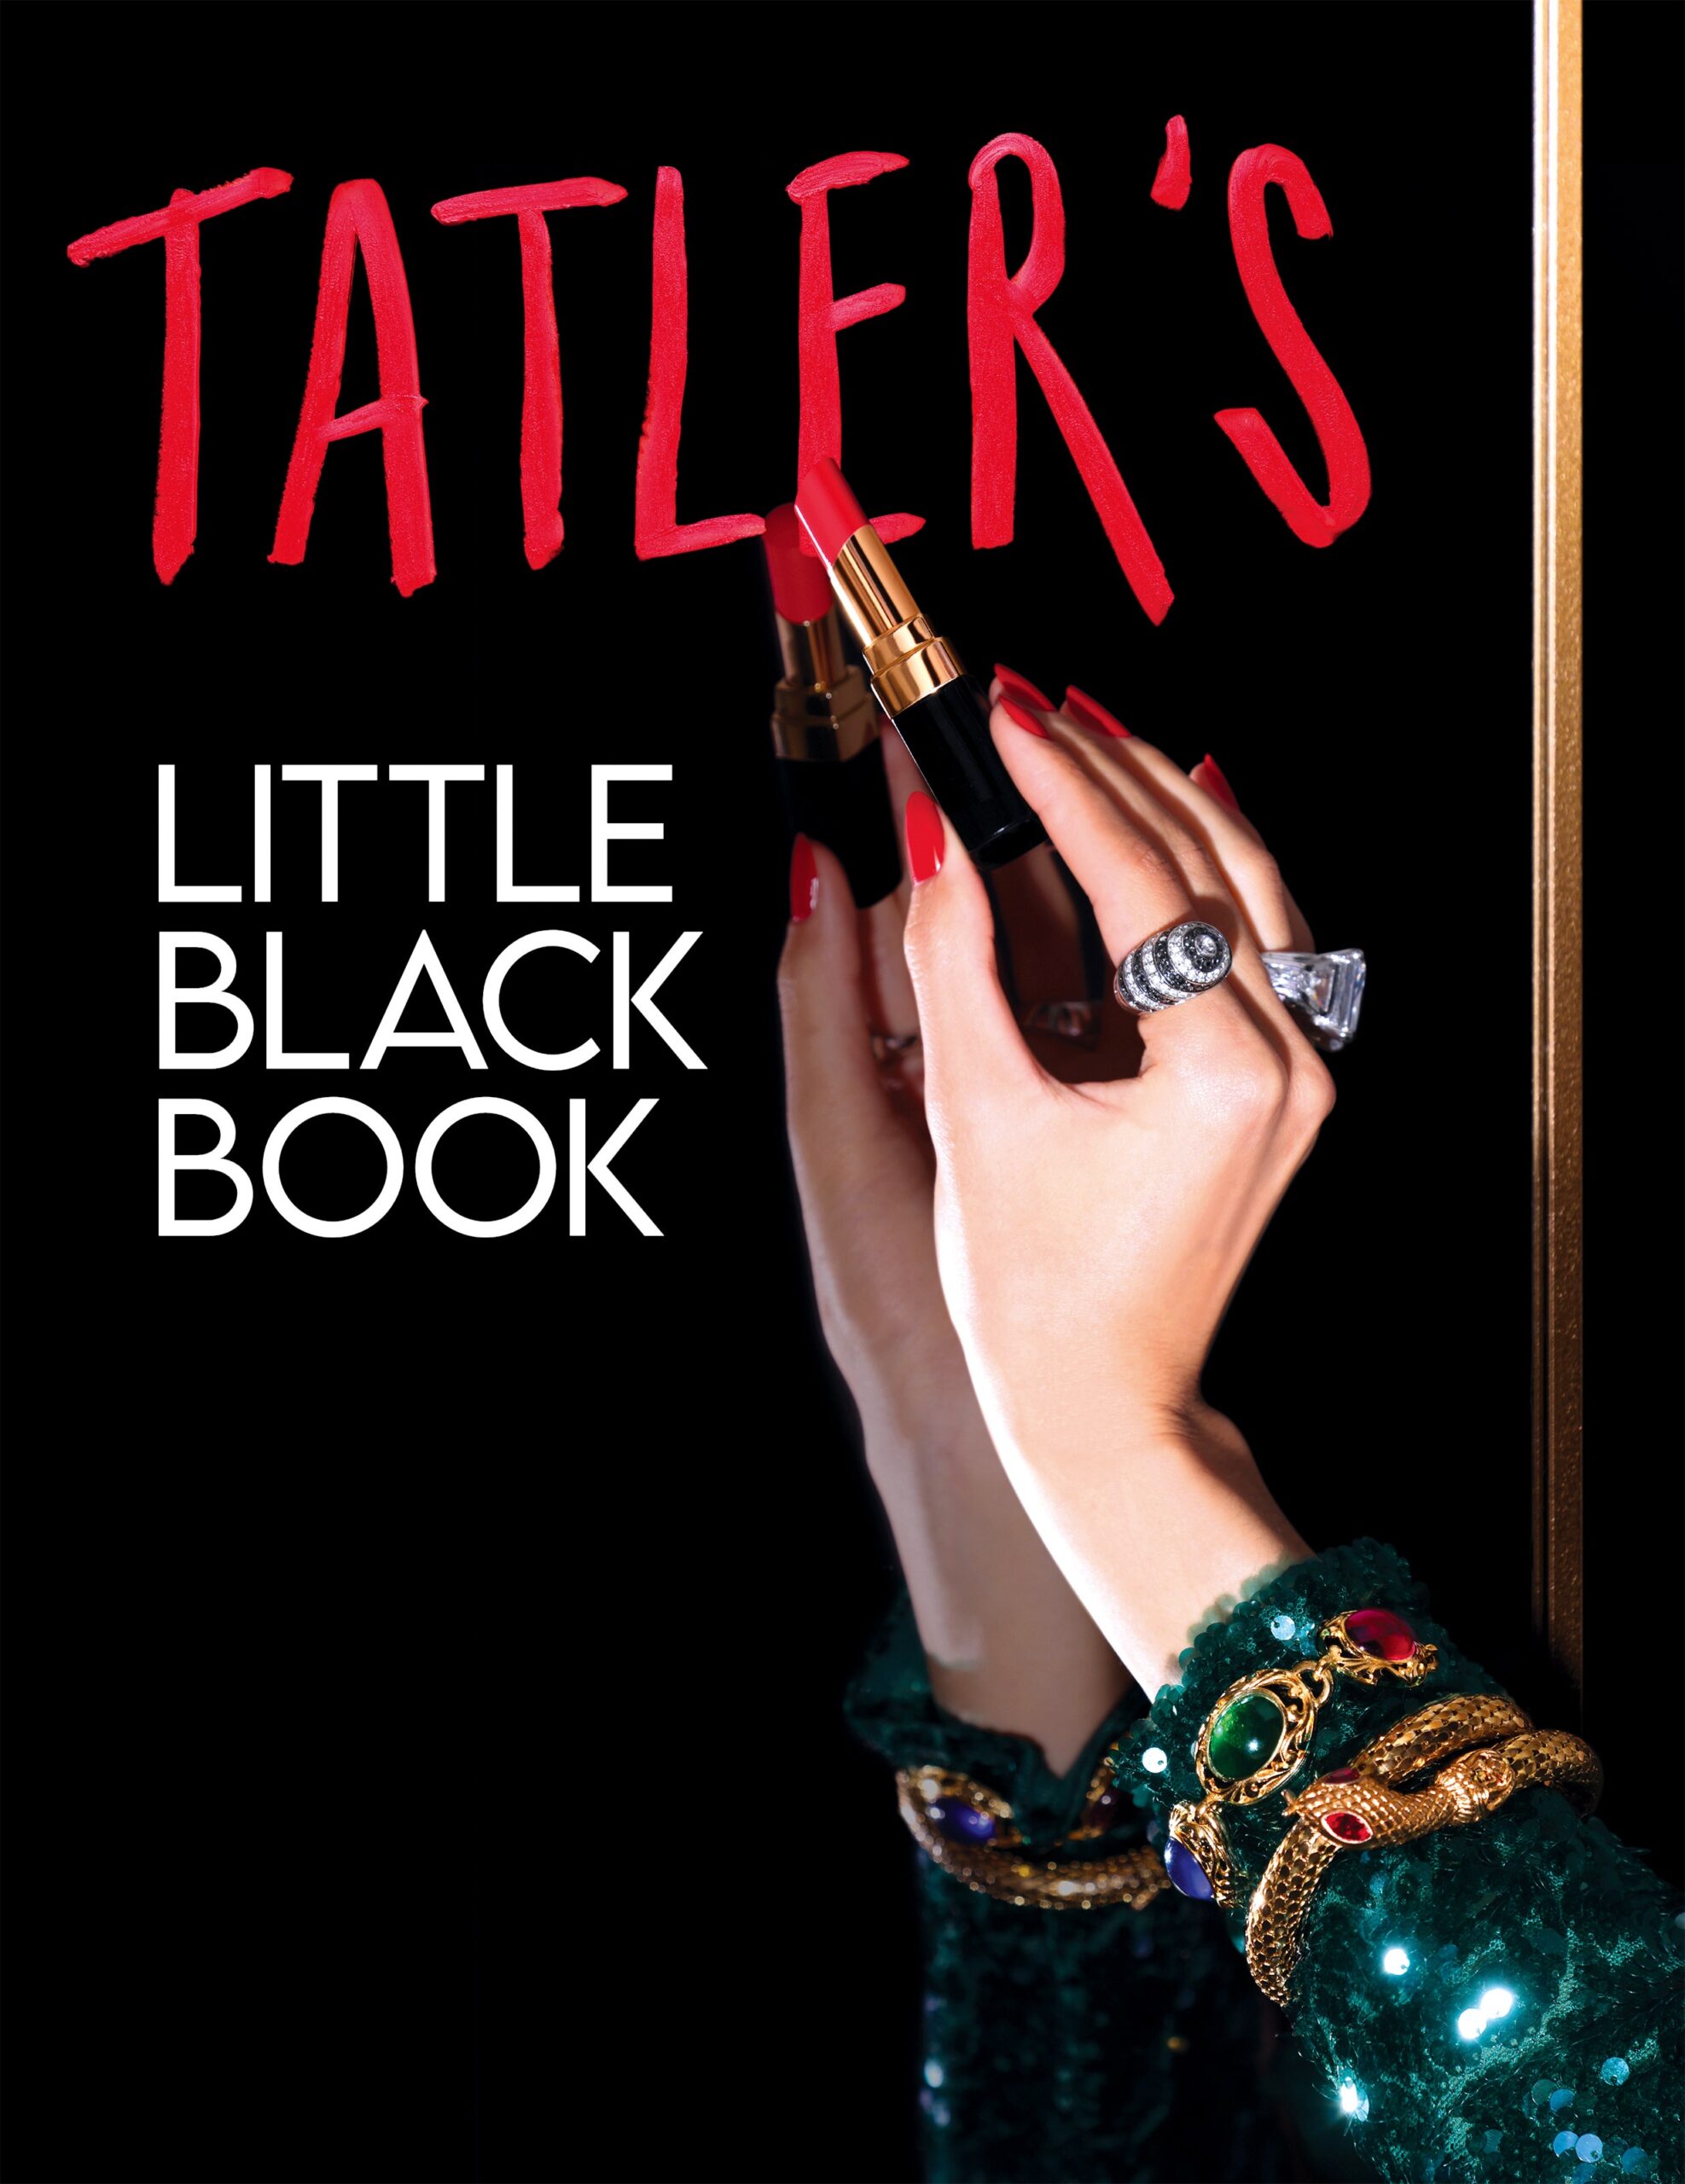 Tatler’s Little Black Book returns in the dazzling December issue